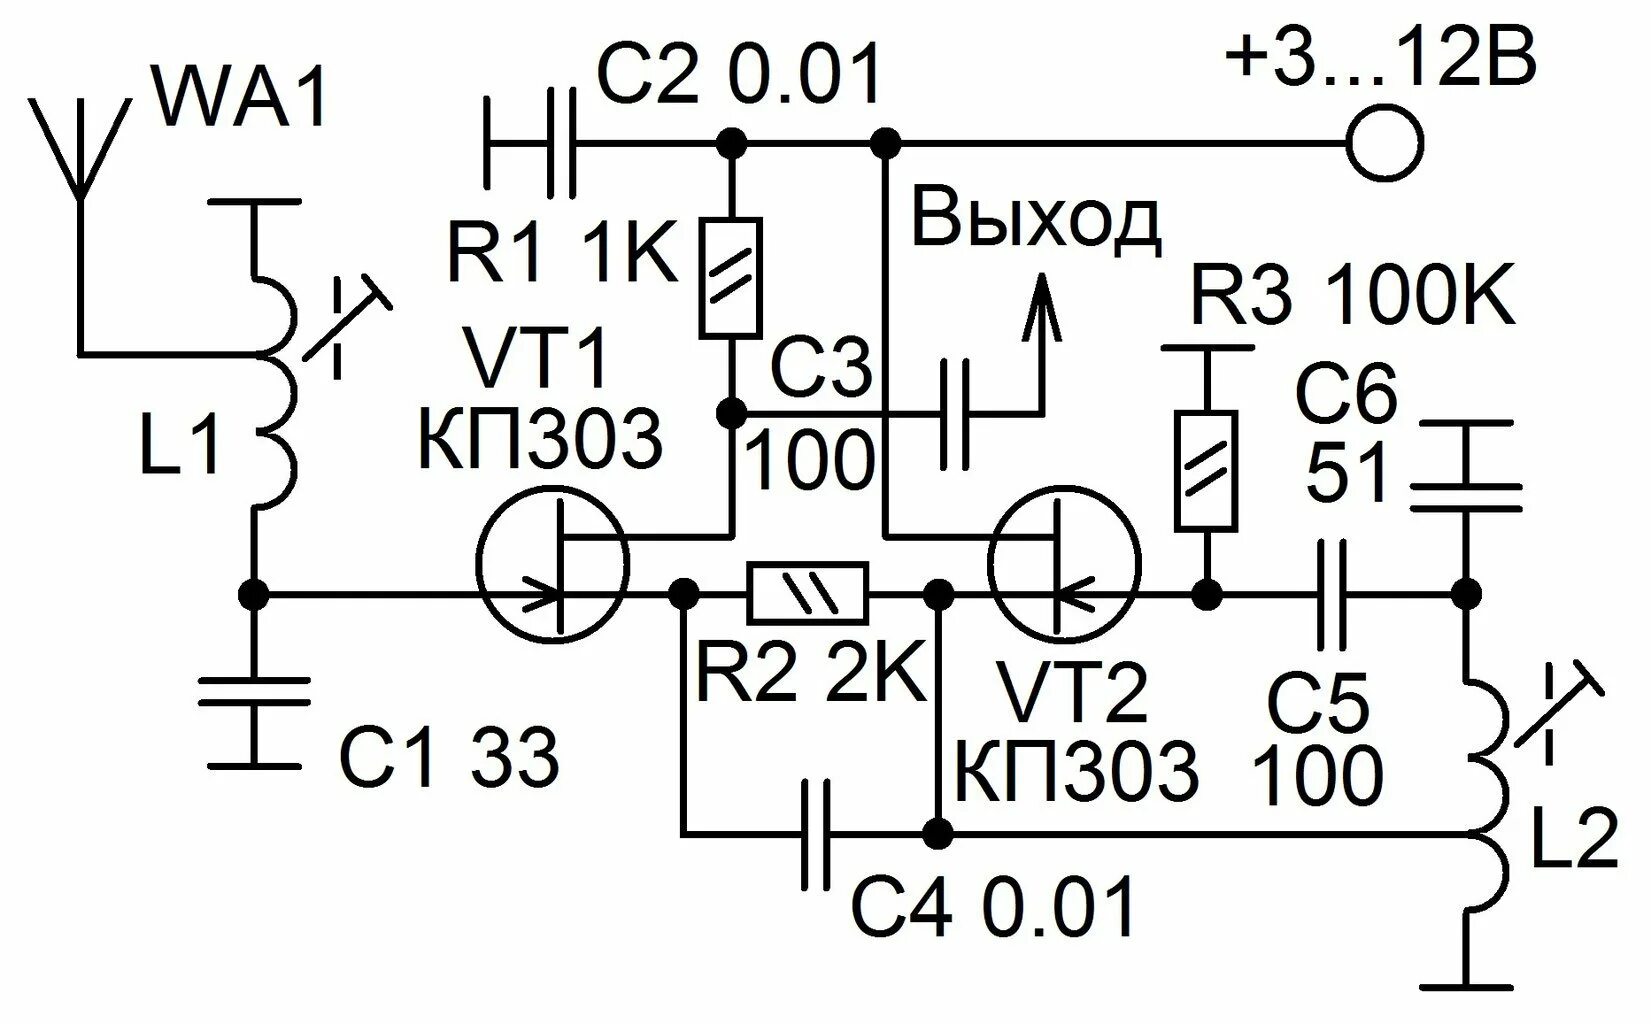 Конвертер укв в фм. Схема УКВ 88-108мгц приемника на транзисторах. Fm радиоприемник на транзисторах 88 108 МГЦ. Схема приемника прямого усиления на 27 МГЦ. Схема конвертера УКВ fm на транзисторах.